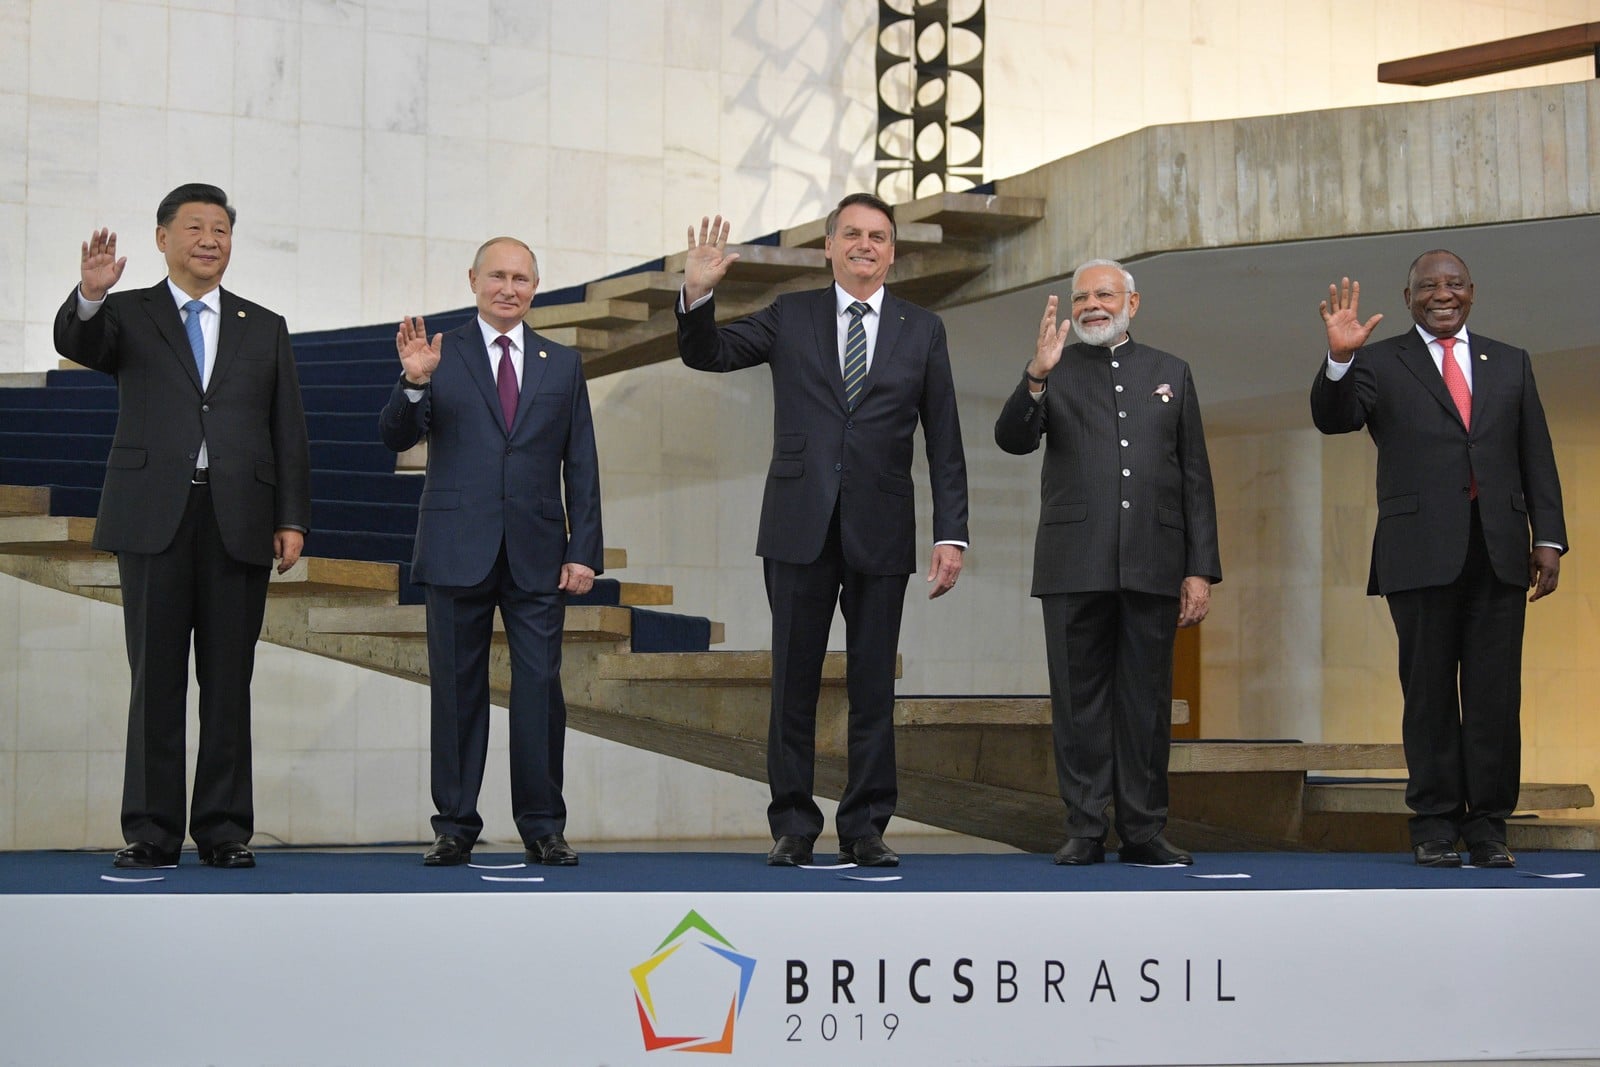 Sommet des BRICS à Brasilia le 14 novembre 2019,
Auteurs  : Alexei Druzhinin/TASS/Sipa USA/SIPA,
Numéro de reportage  : SIPAUSA30189835_000027.